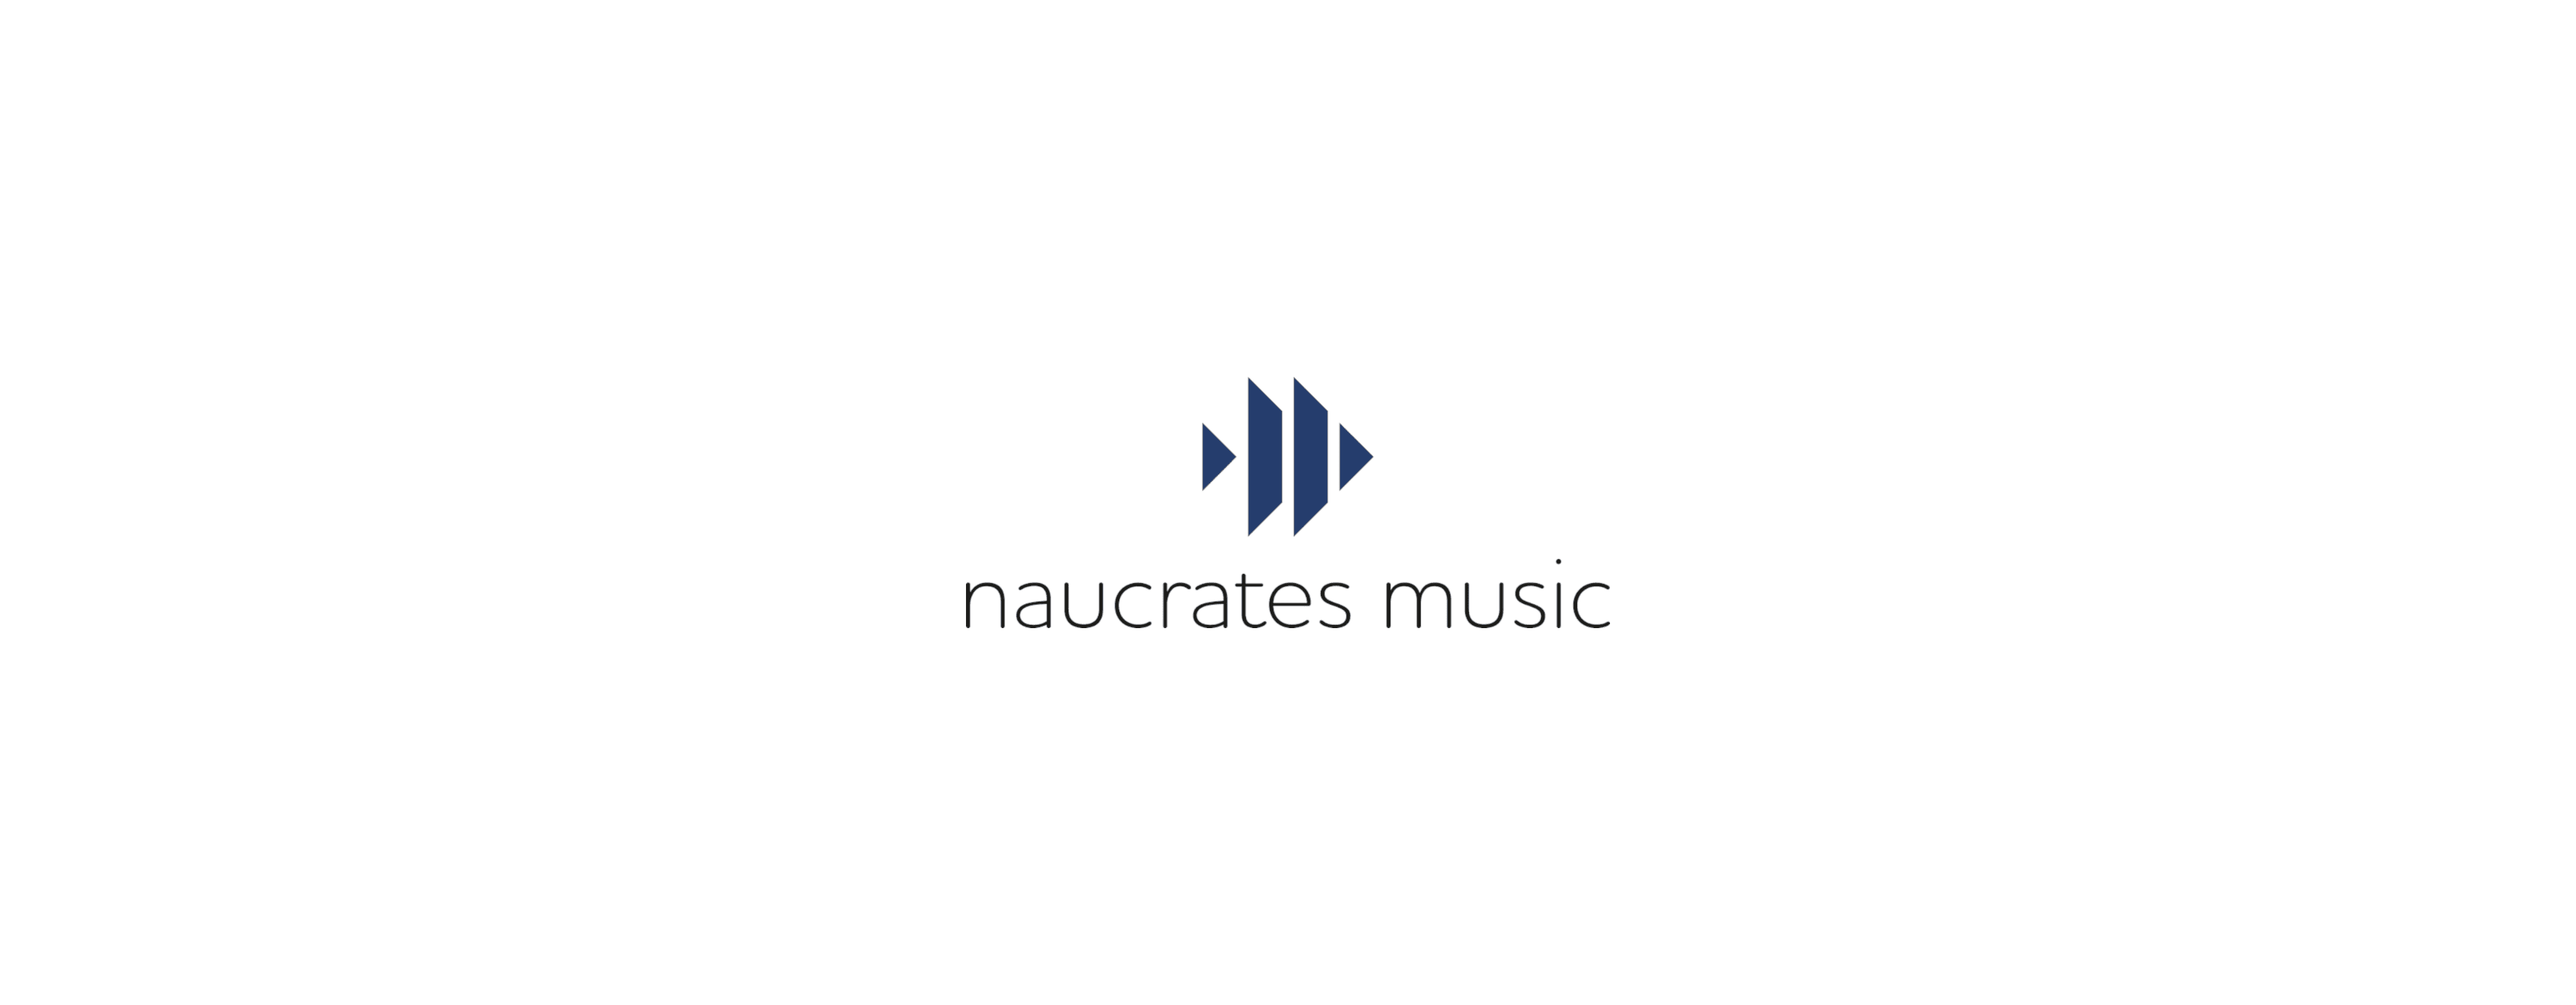 NaucratesMusic banner